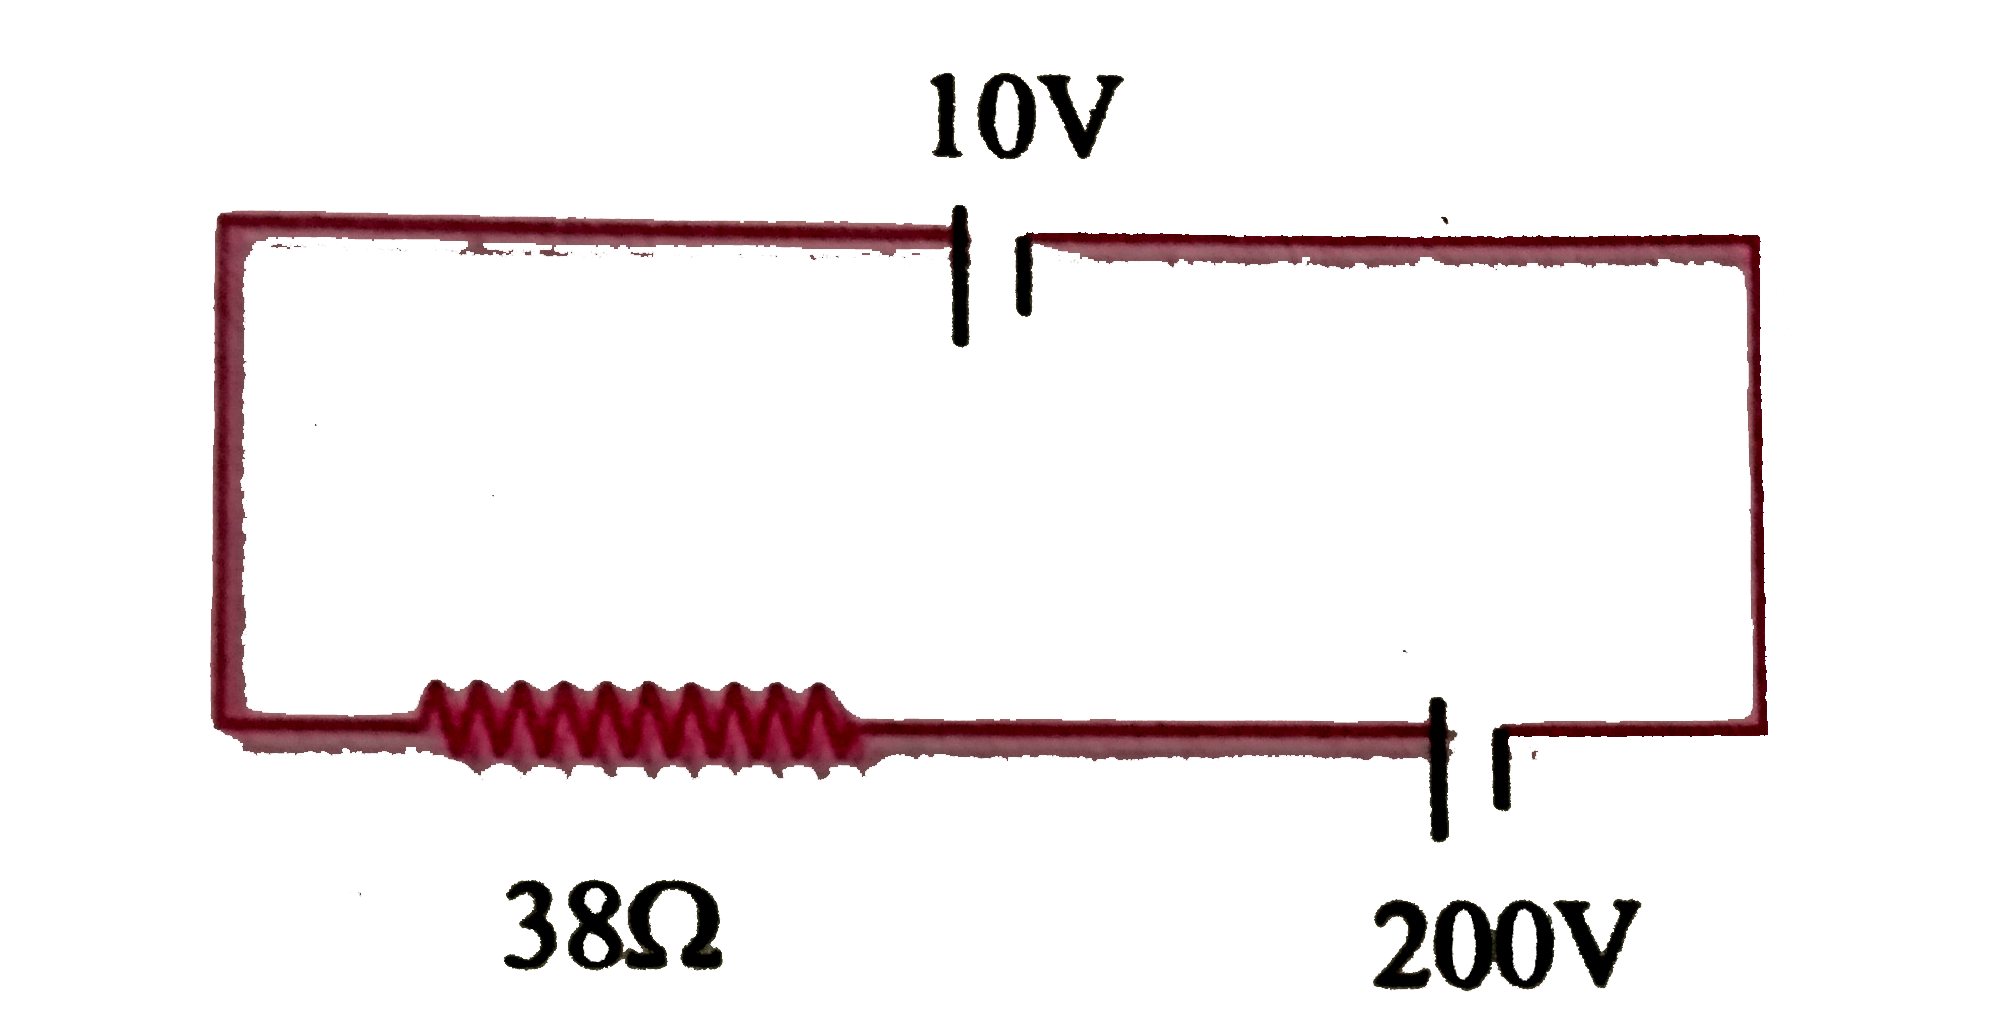 एक 10 V  कि बैटरी को जिसका आंतरिक प्रतिरोध नगण्य है ,200 V  कि बैटरी  तथा 38 Omega  प्रतिरोध के  साथ जोड़ा गया है ( निम्न चित्रानुसार ) तो परिपथ में से प्रवाहित धारा का मान ज्ञात कीजिए ।